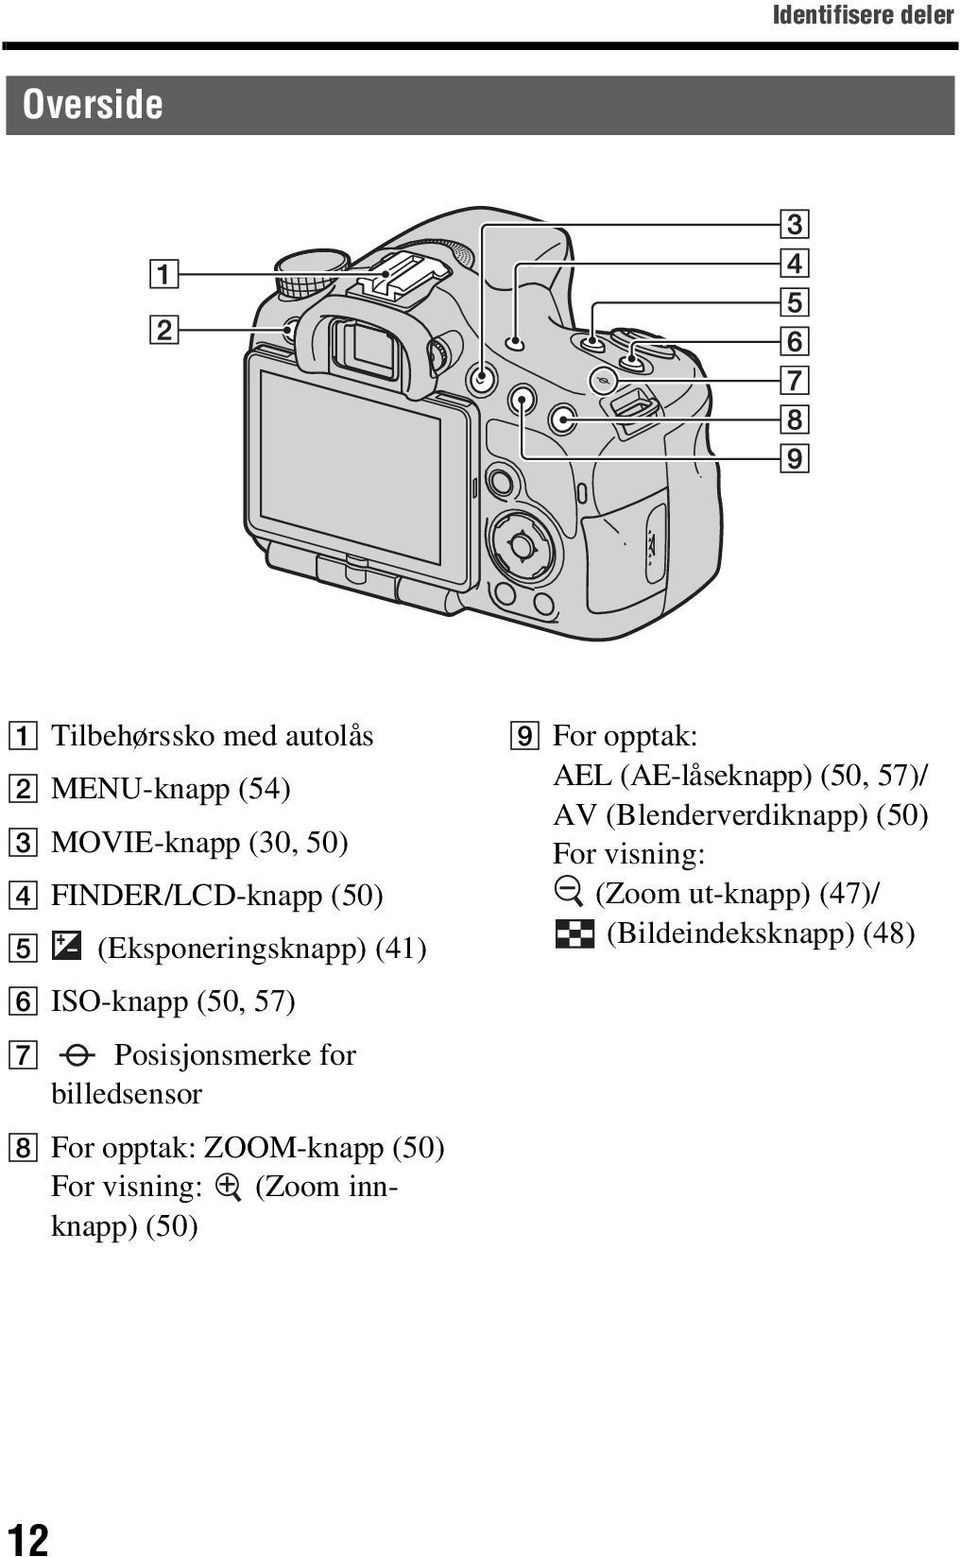 billedsensor H For opptak: ZOOM-knapp (50) For visning: (Zoom innknapp) (50) I For opptak: AEL